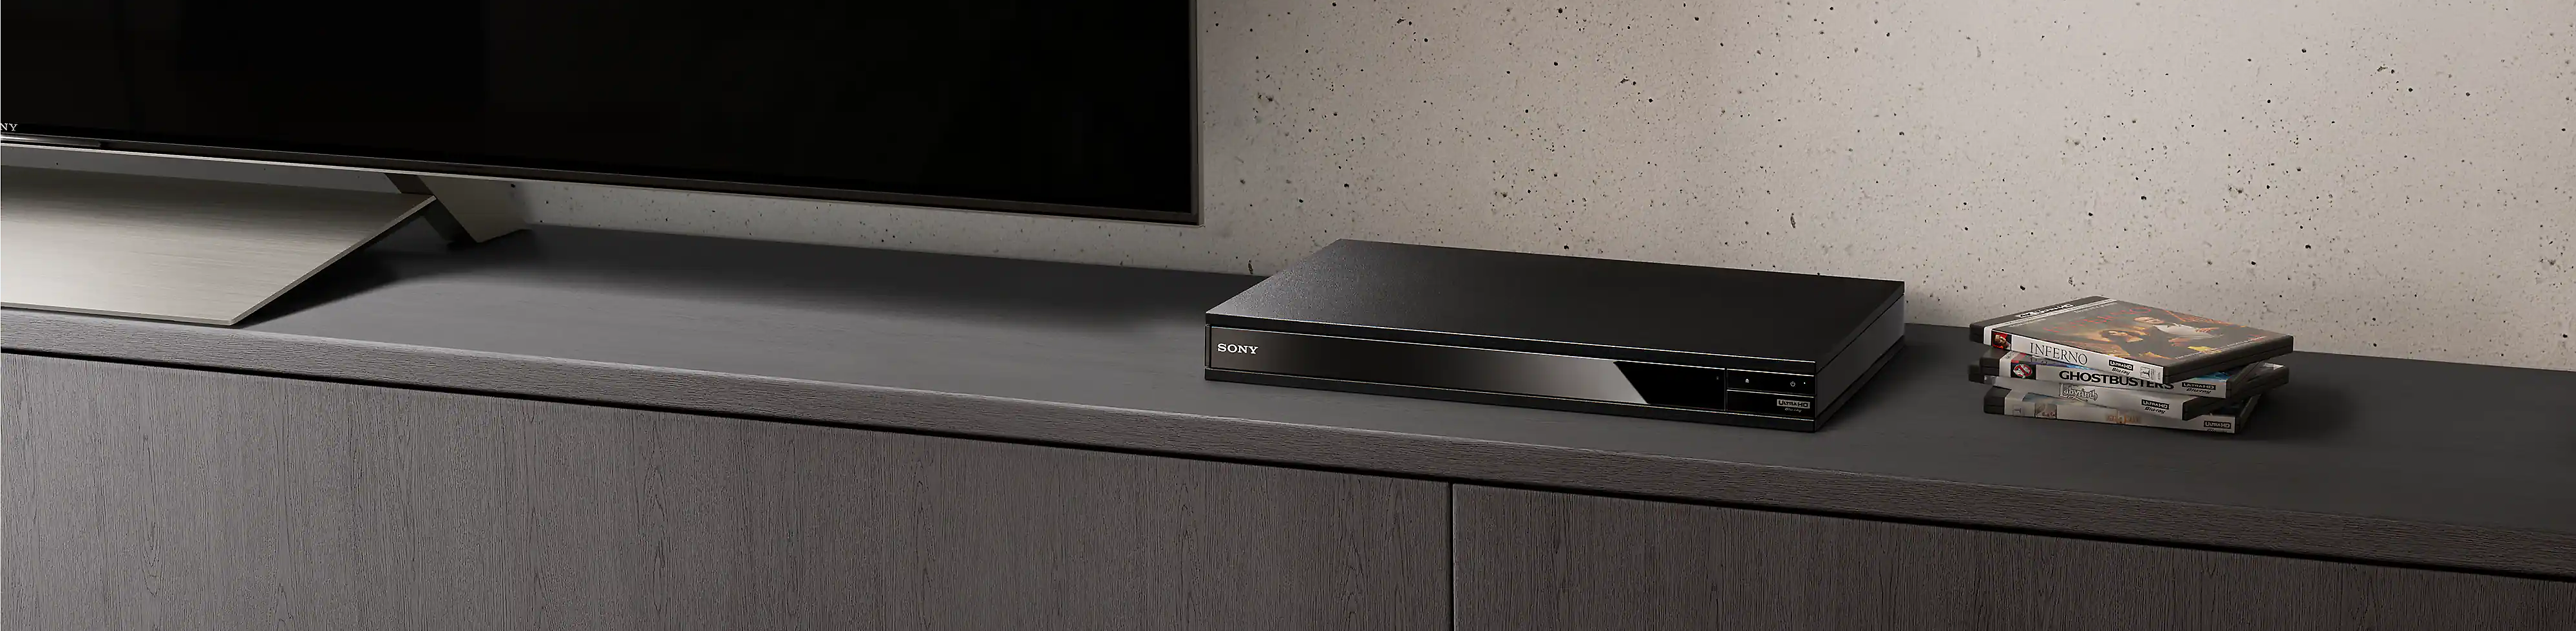 Se ve un reproductor de Blu-ray Disc™ entre una pila de discos Blu-ray y un televisor negro.